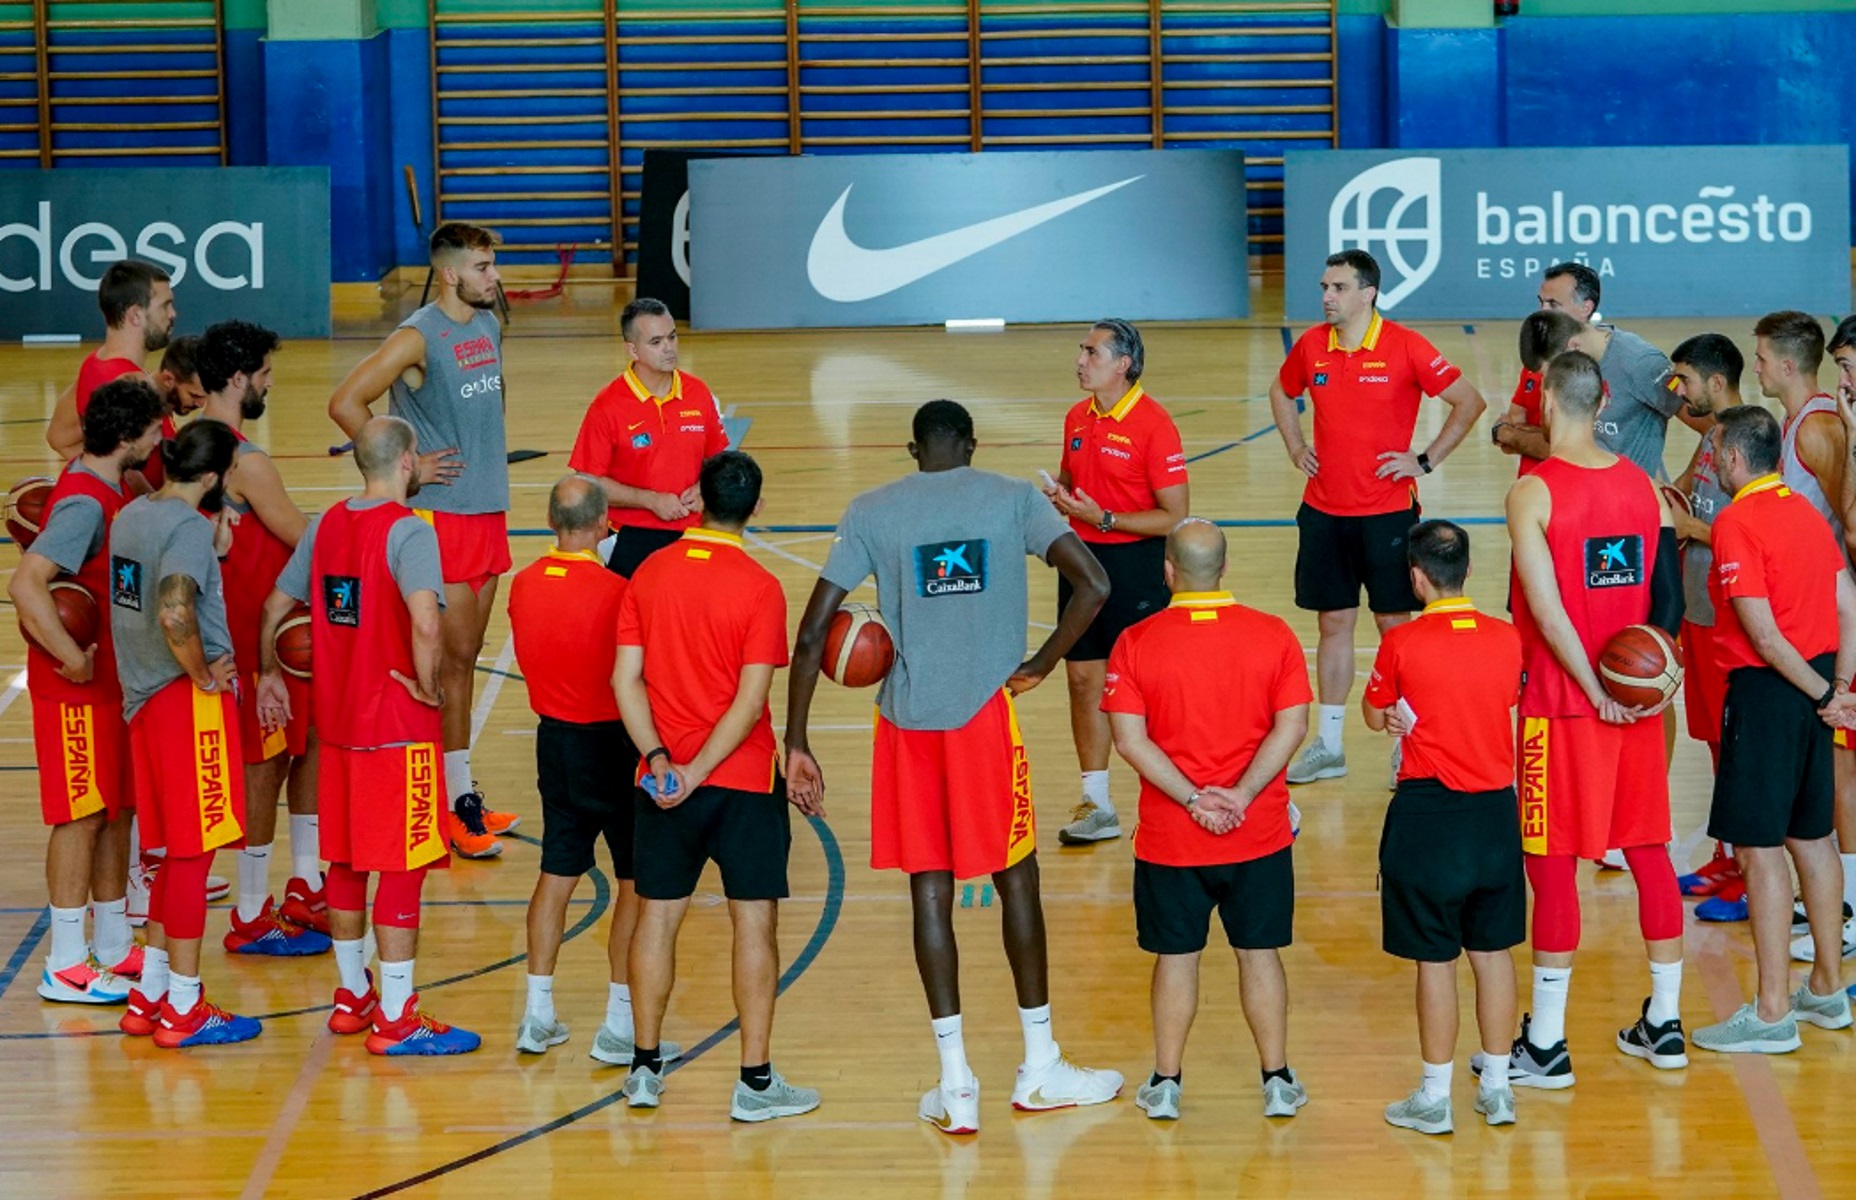 Μουντομπάσκετ 2019: Η Ισπανία ανακοίνωσε την τελική 12άδα